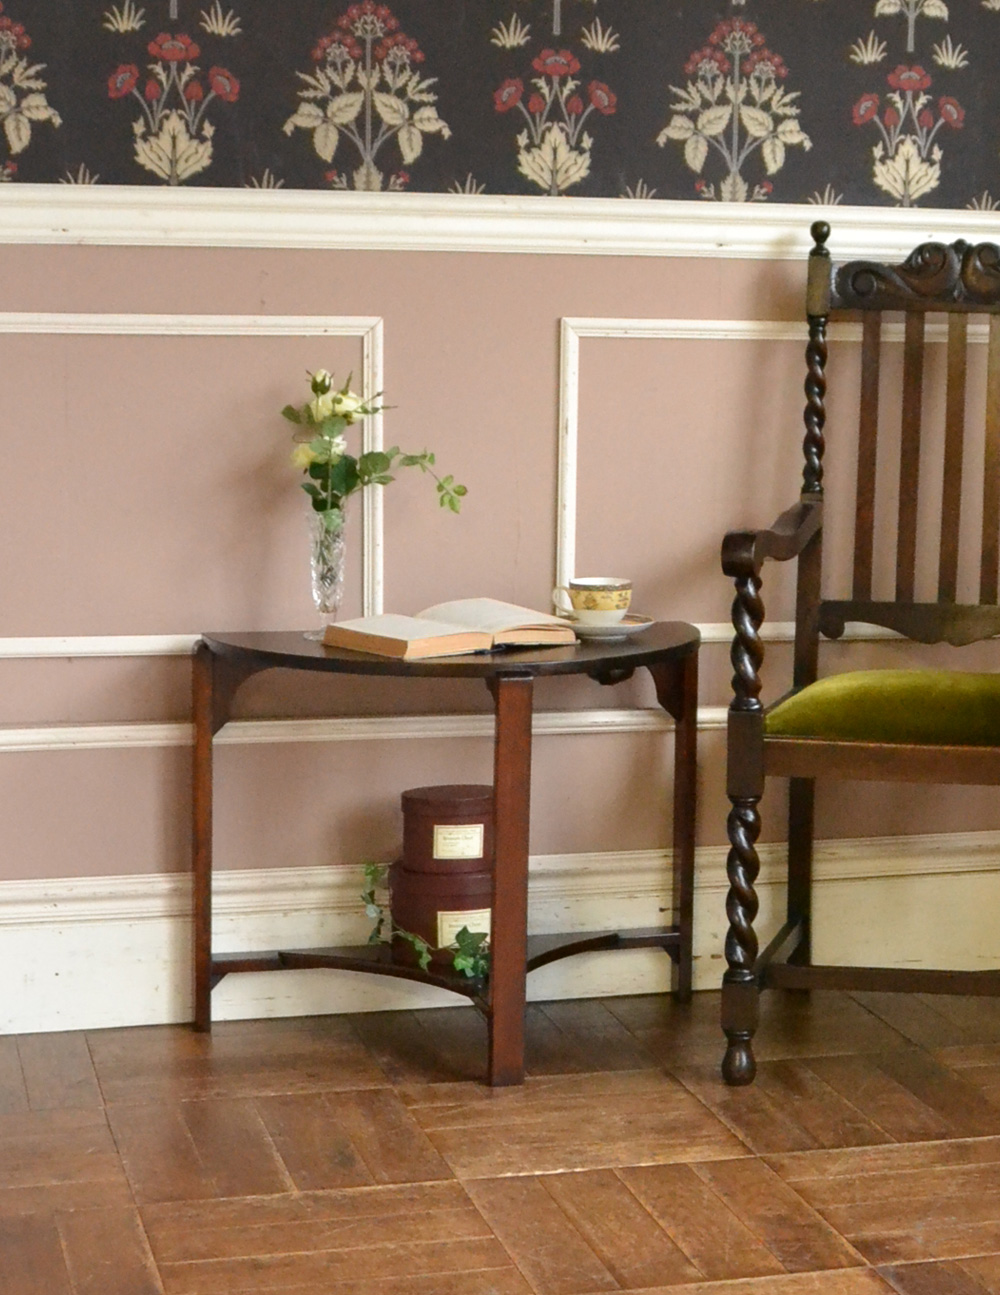 イギリスアンティークの家具、壁にピタっと付けられるハーフムーン型のコンソールテーブル (q-669-f)